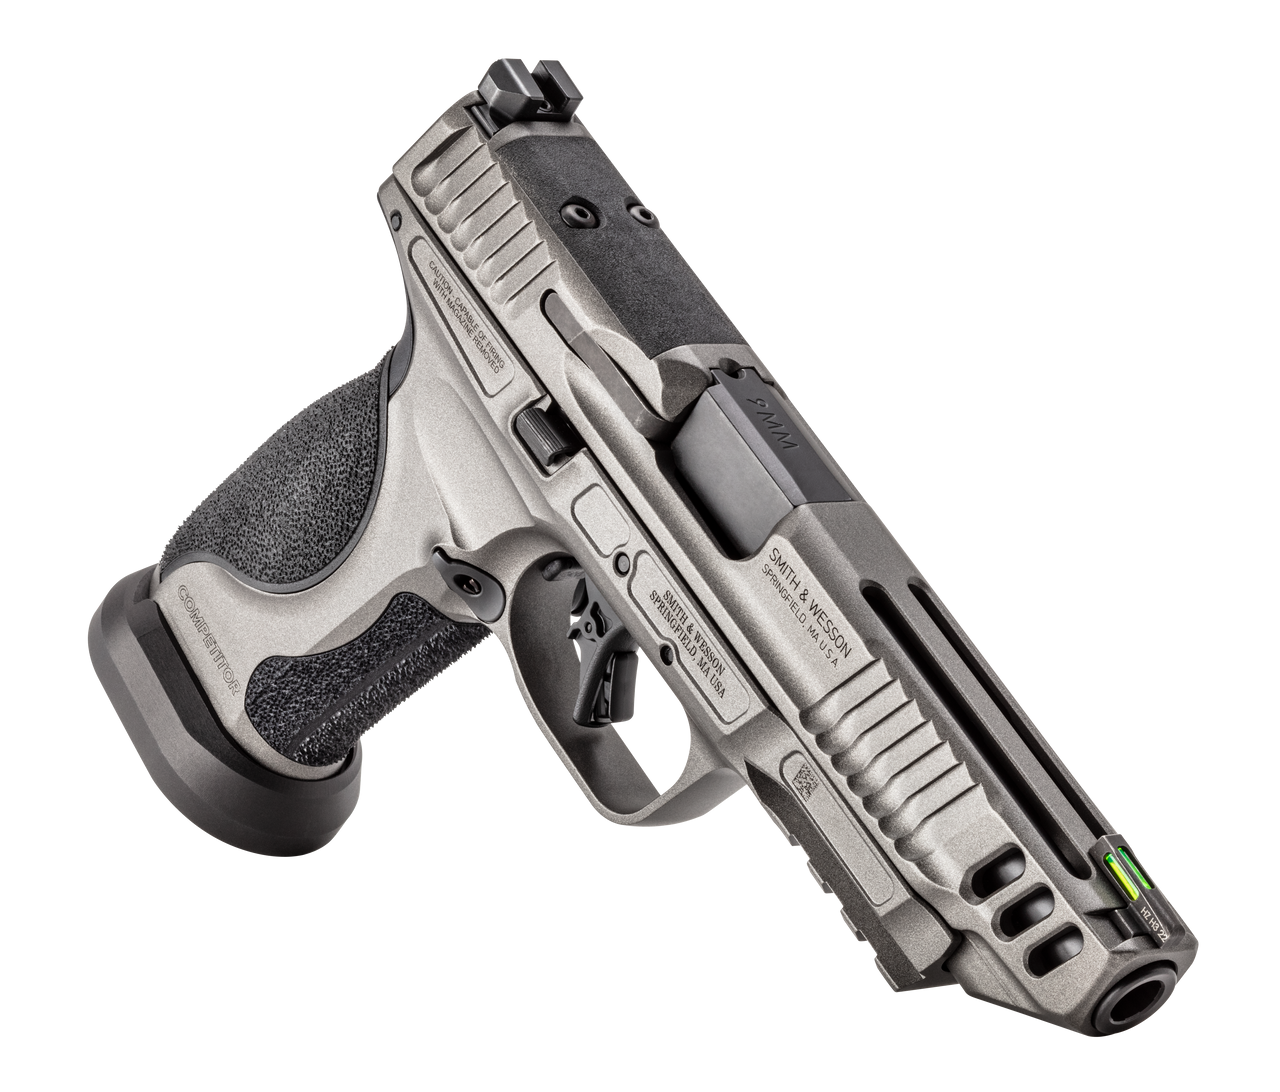 Cerakoted Smith & Wesson Handgun by Web User